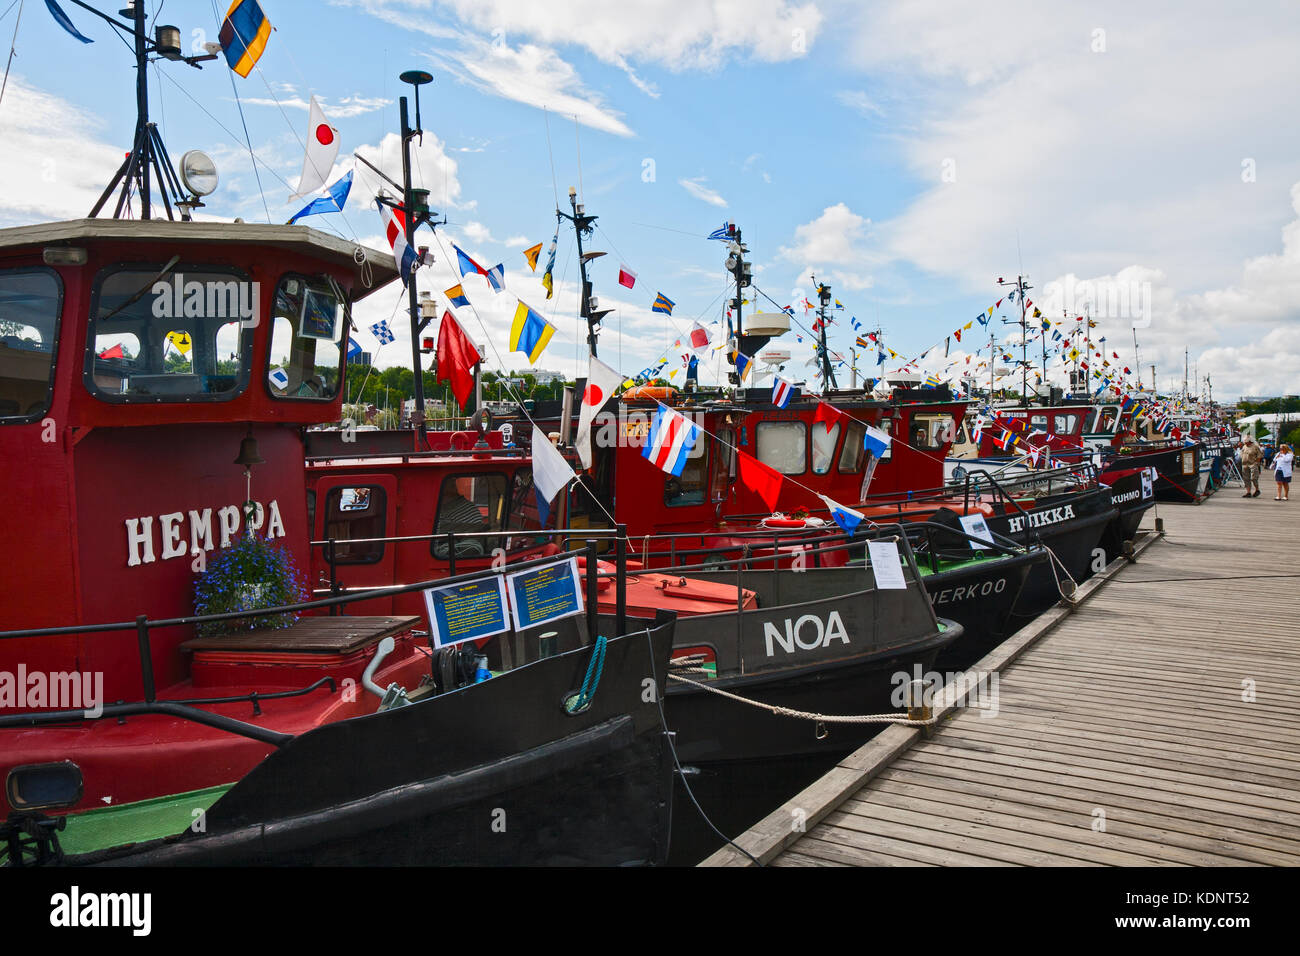 Lappeenranta, Finlandia - 21 luglio 2013 - Regata vecchie barche a motore. barche costruite agli inizi del secolo scorso, ormeggiata al molo di Lappeenranta. Foto Stock